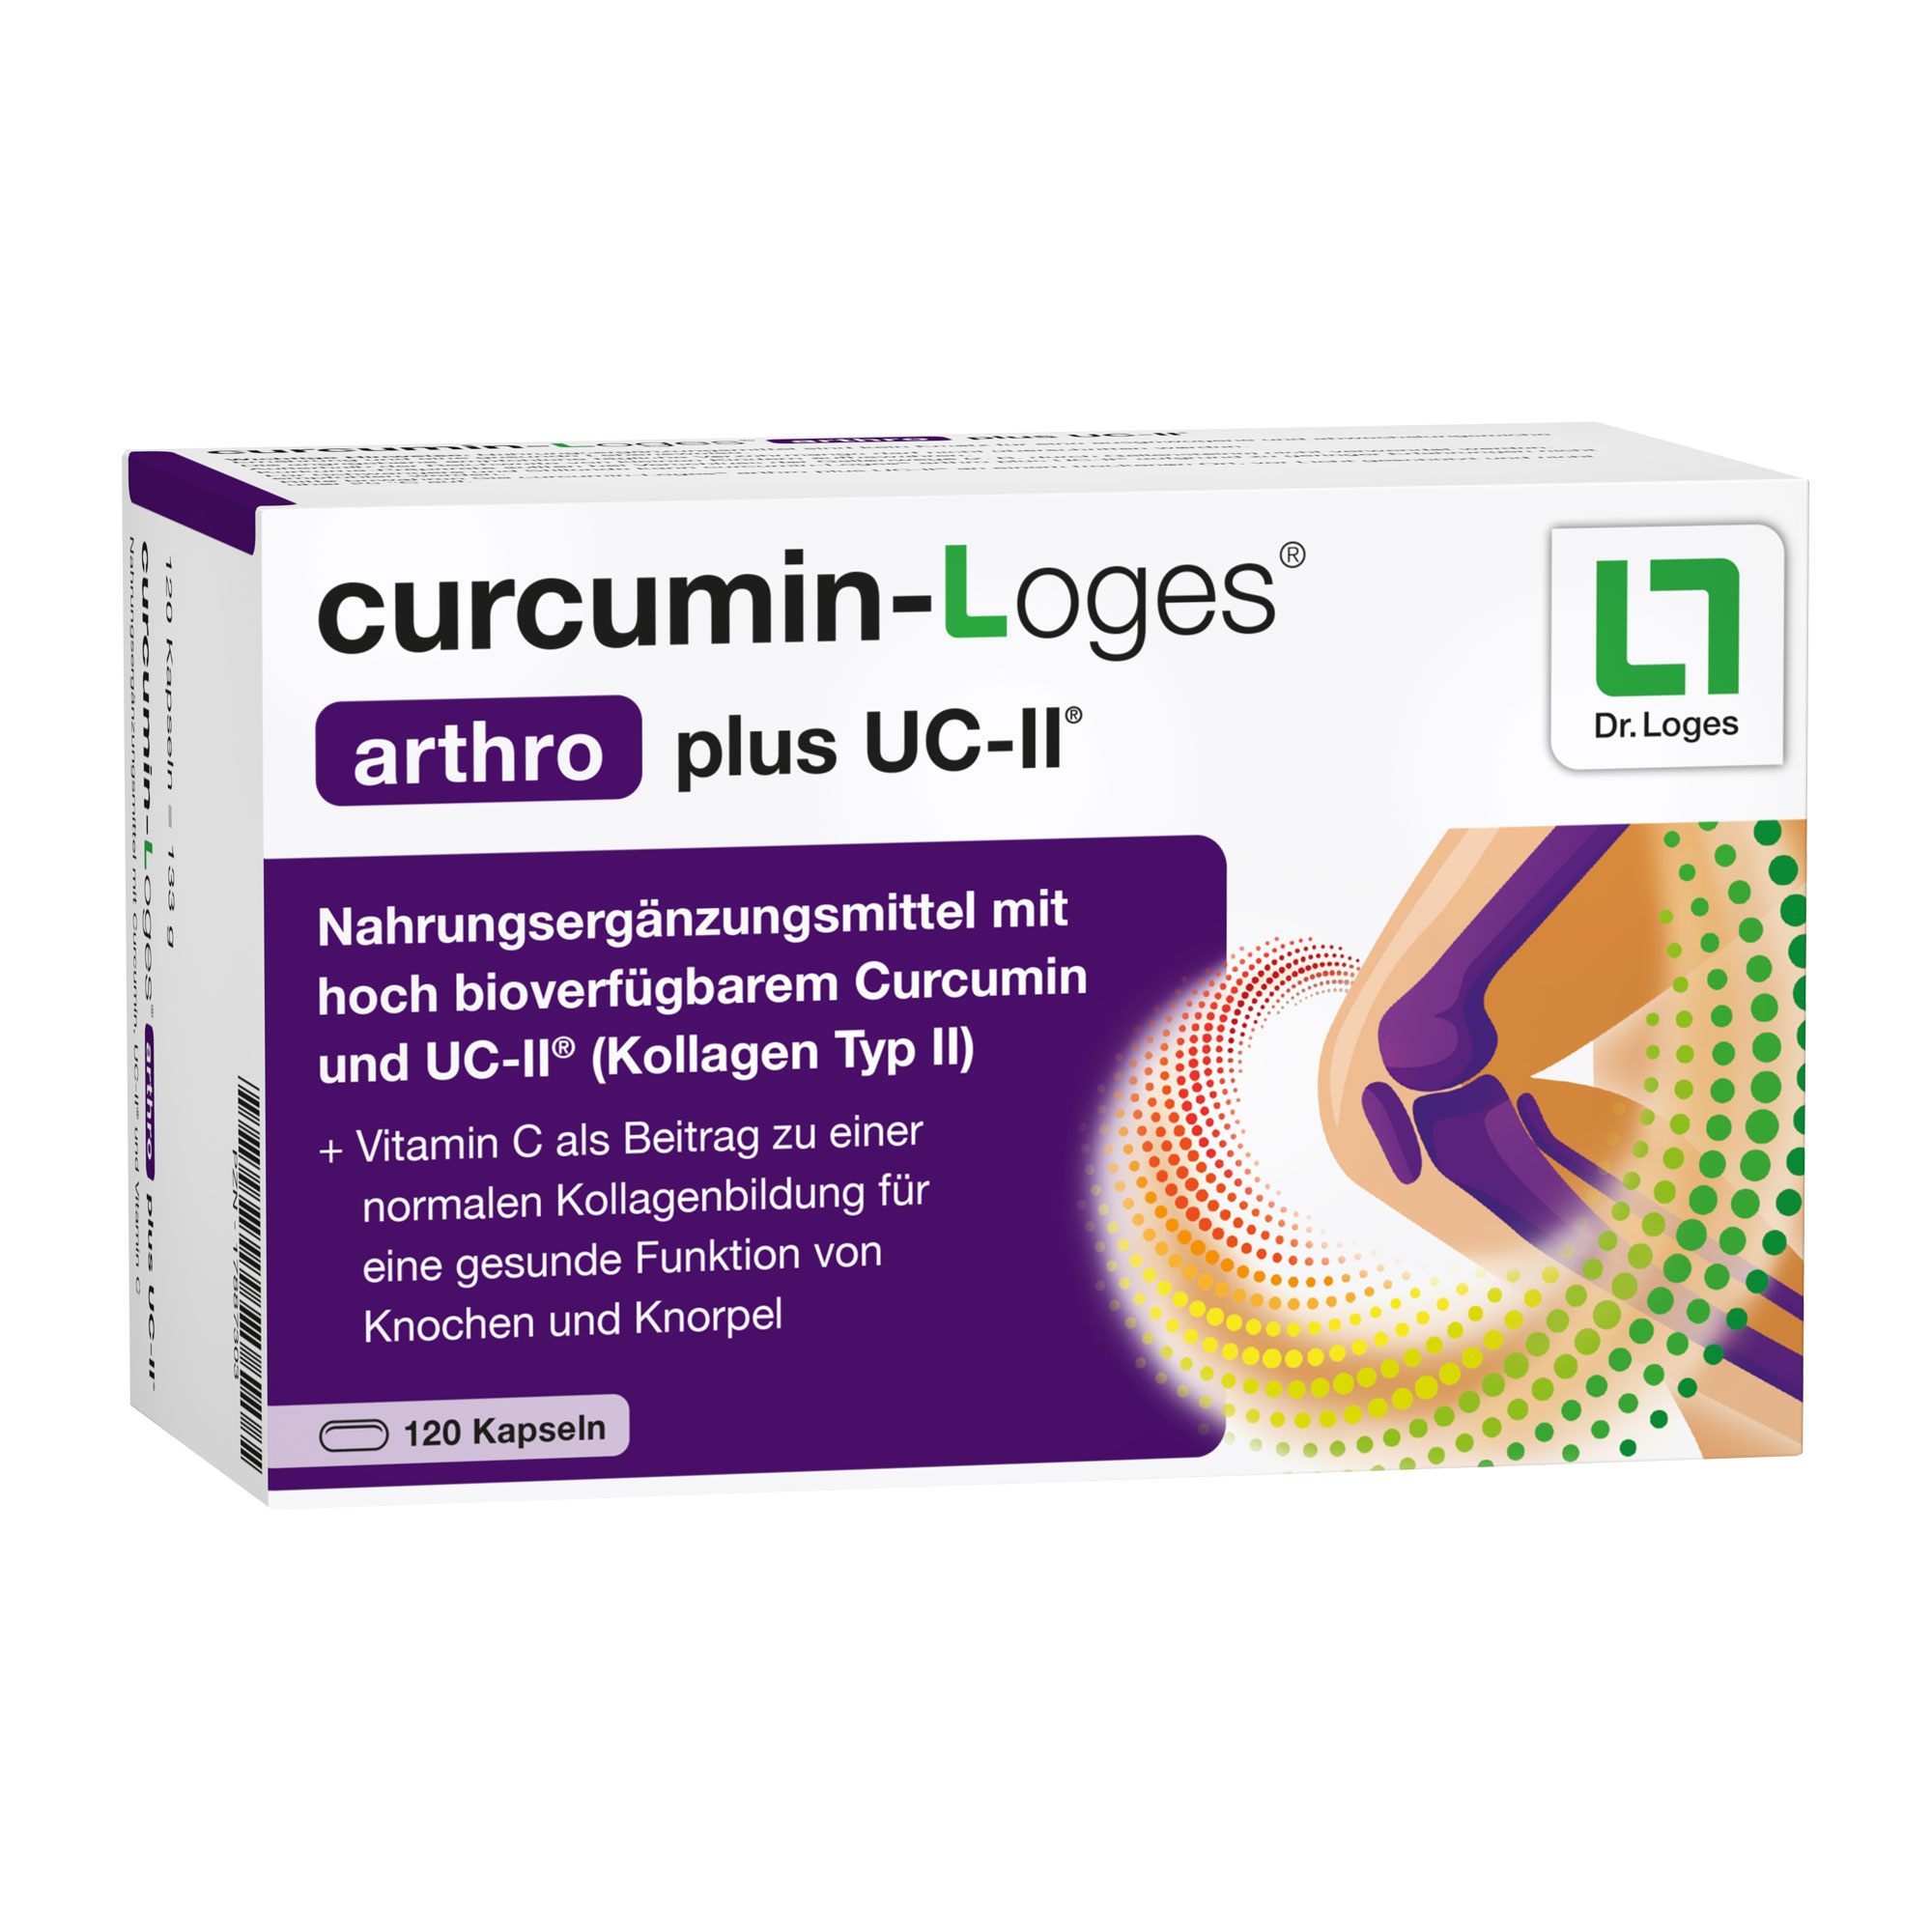 Nahrungsergänzungsmittel mit hoch bioverfügbarem Curcumin, UC-II® und Vitamin C.